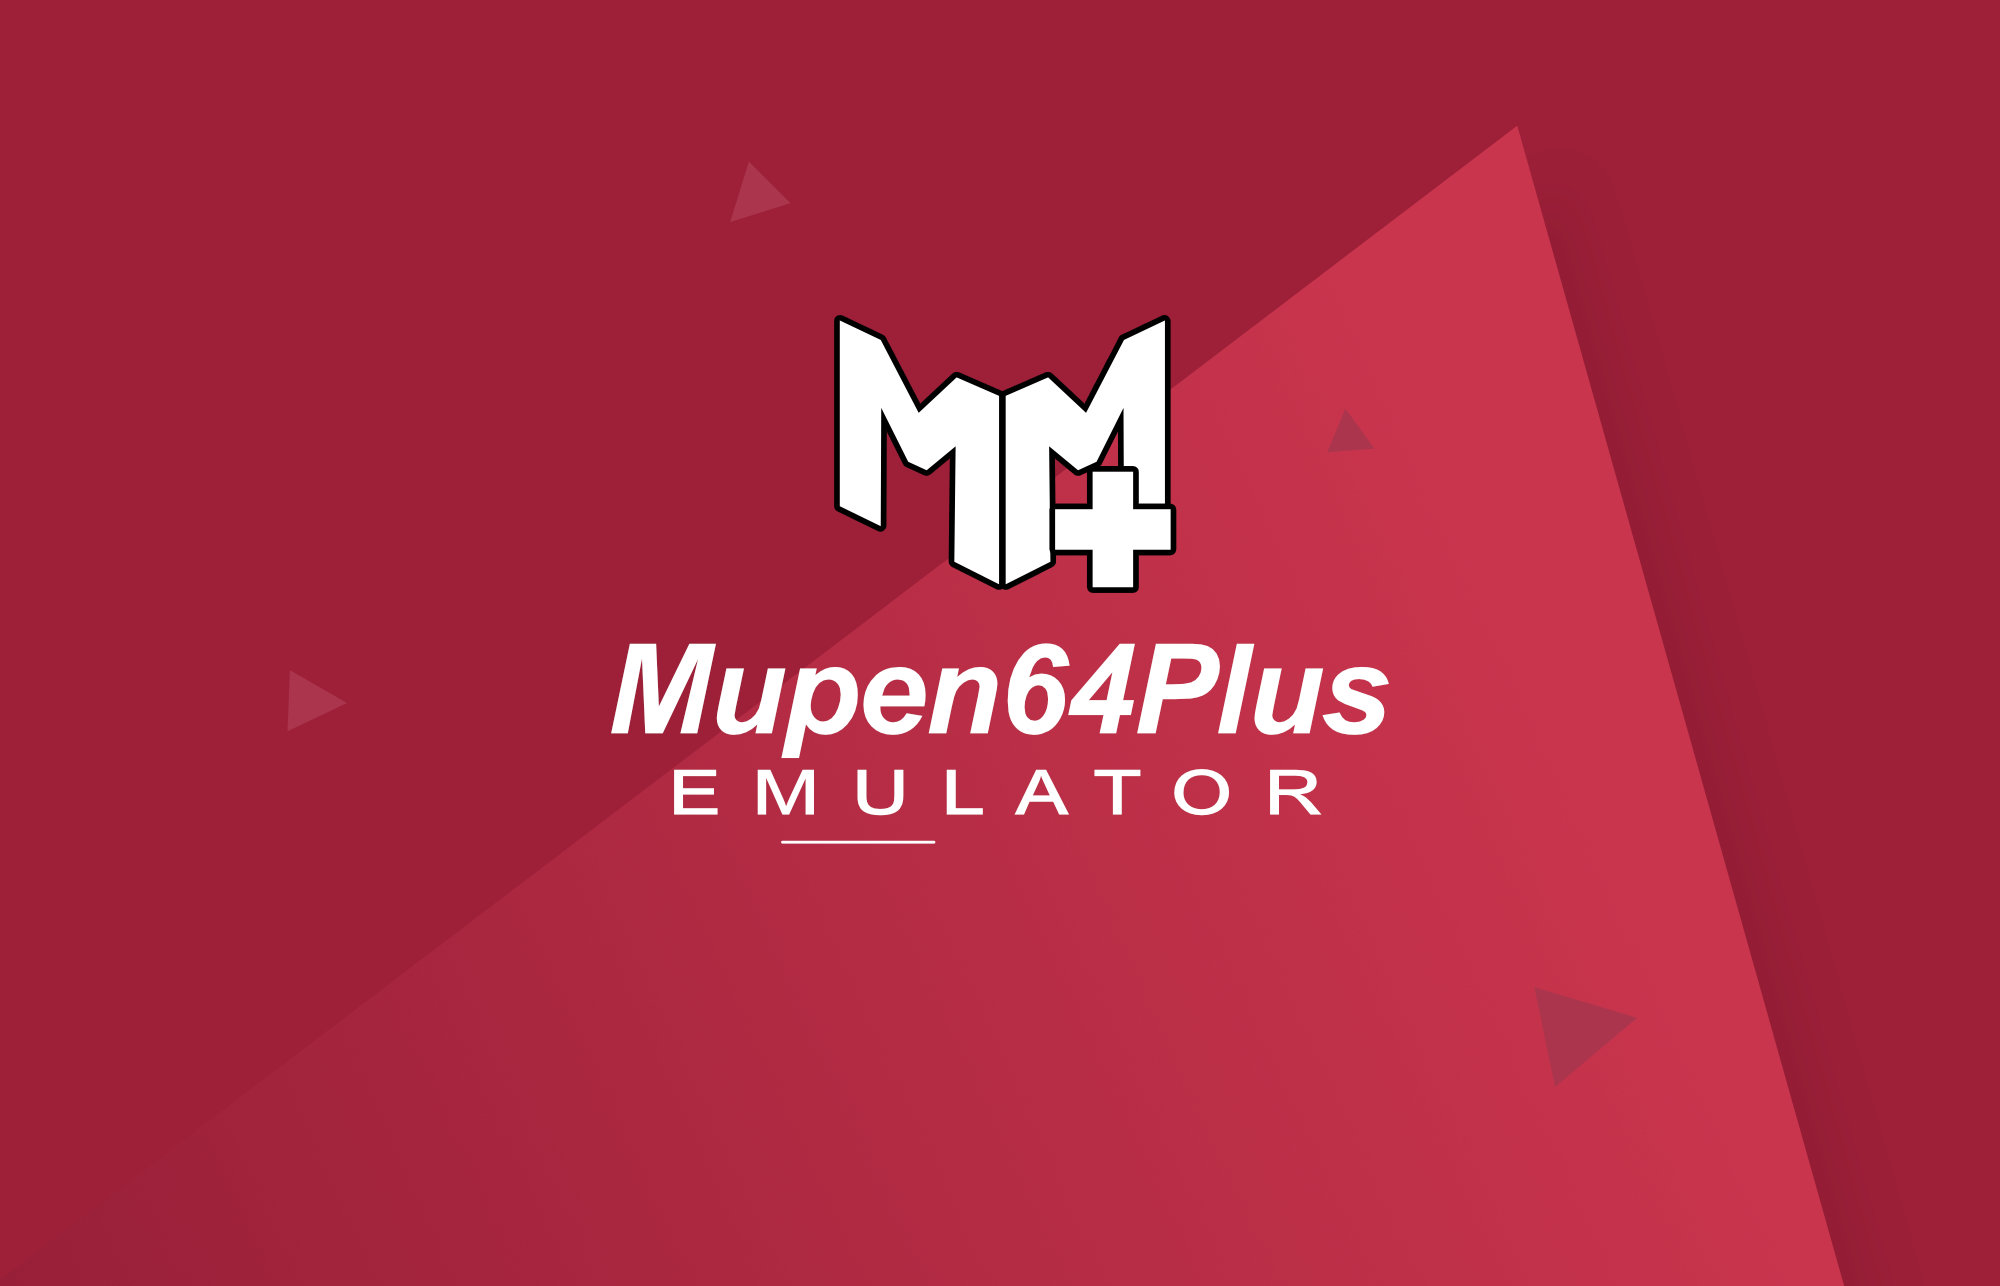 Mupen64Plus - emulator for the Nintendo 64